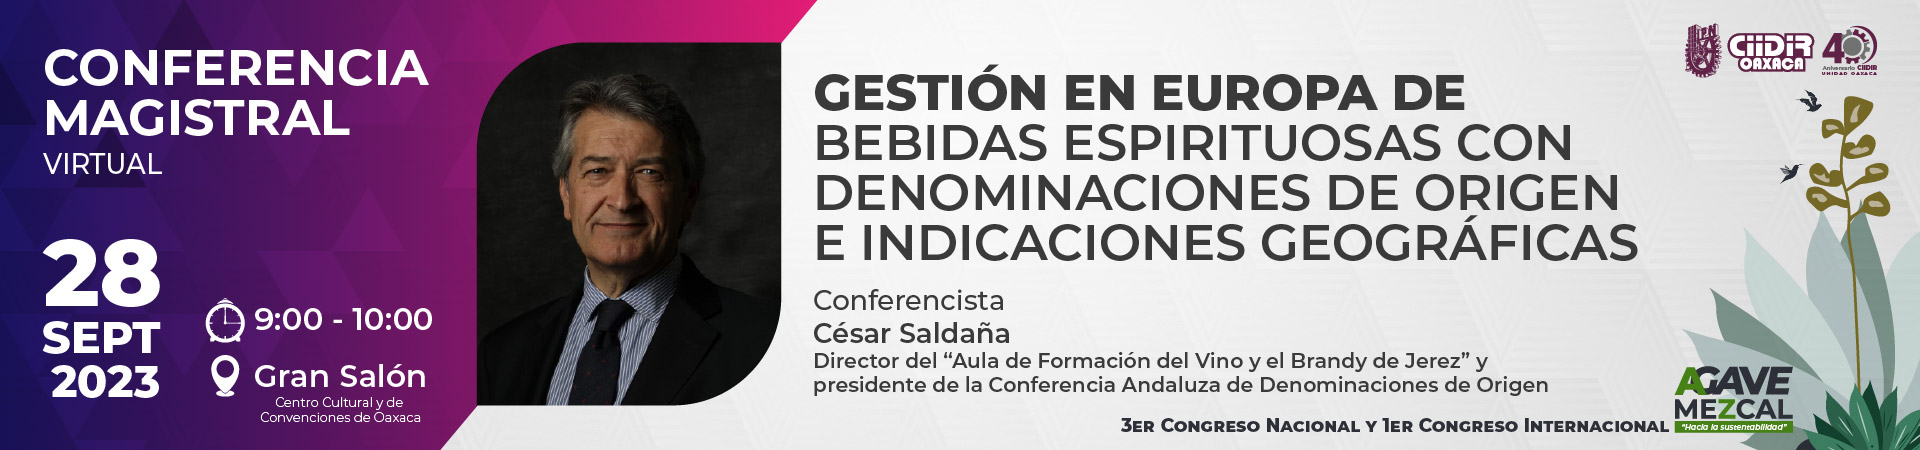 Conferencista César Saldaña - Gestión en Europa de bebidas espirituosas